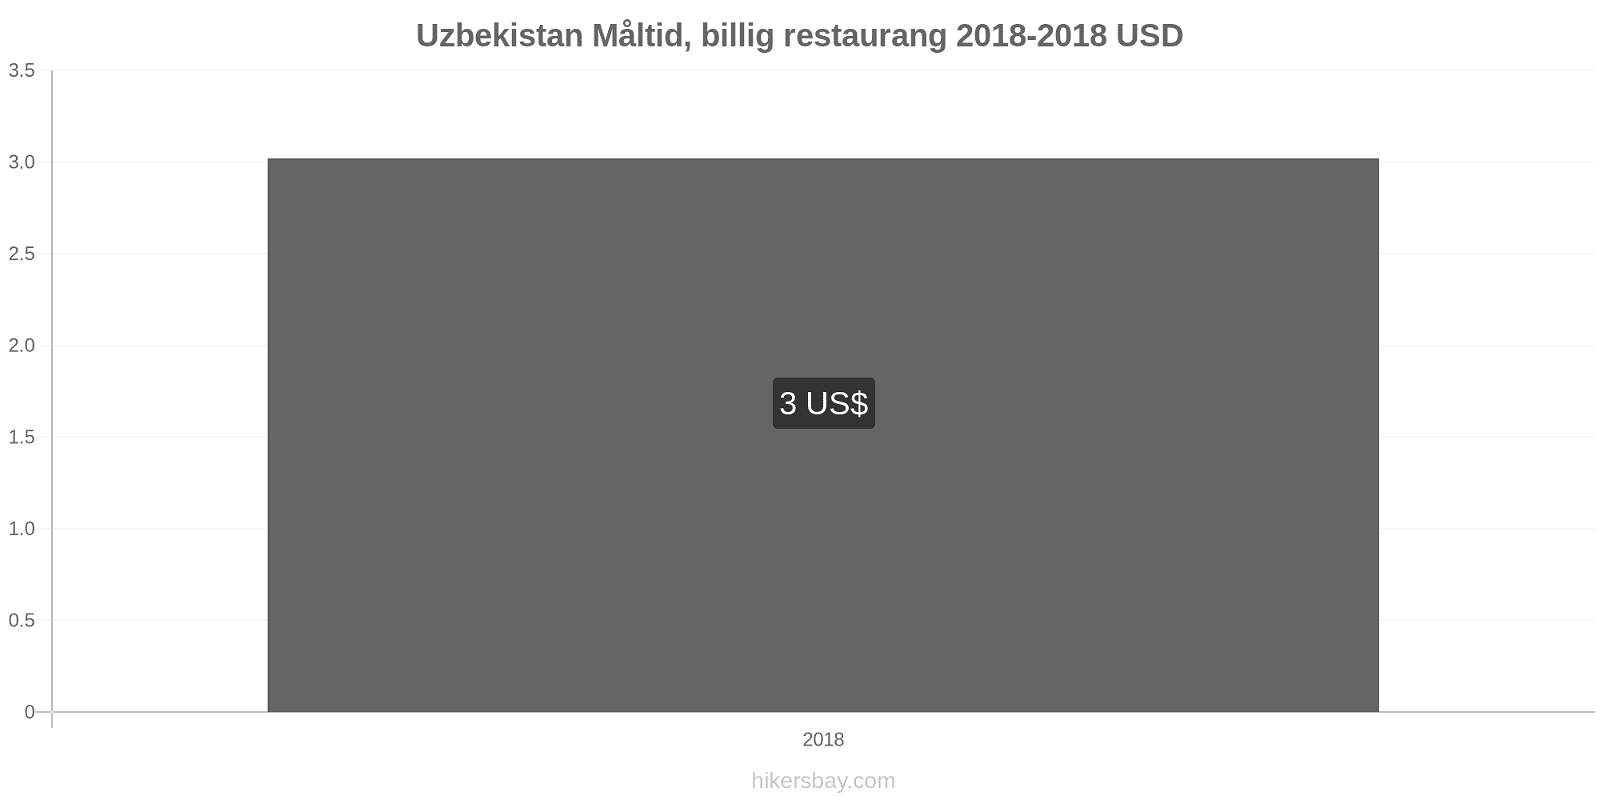 Uzbekistan prisändringar Måltid i en billig restaurang hikersbay.com